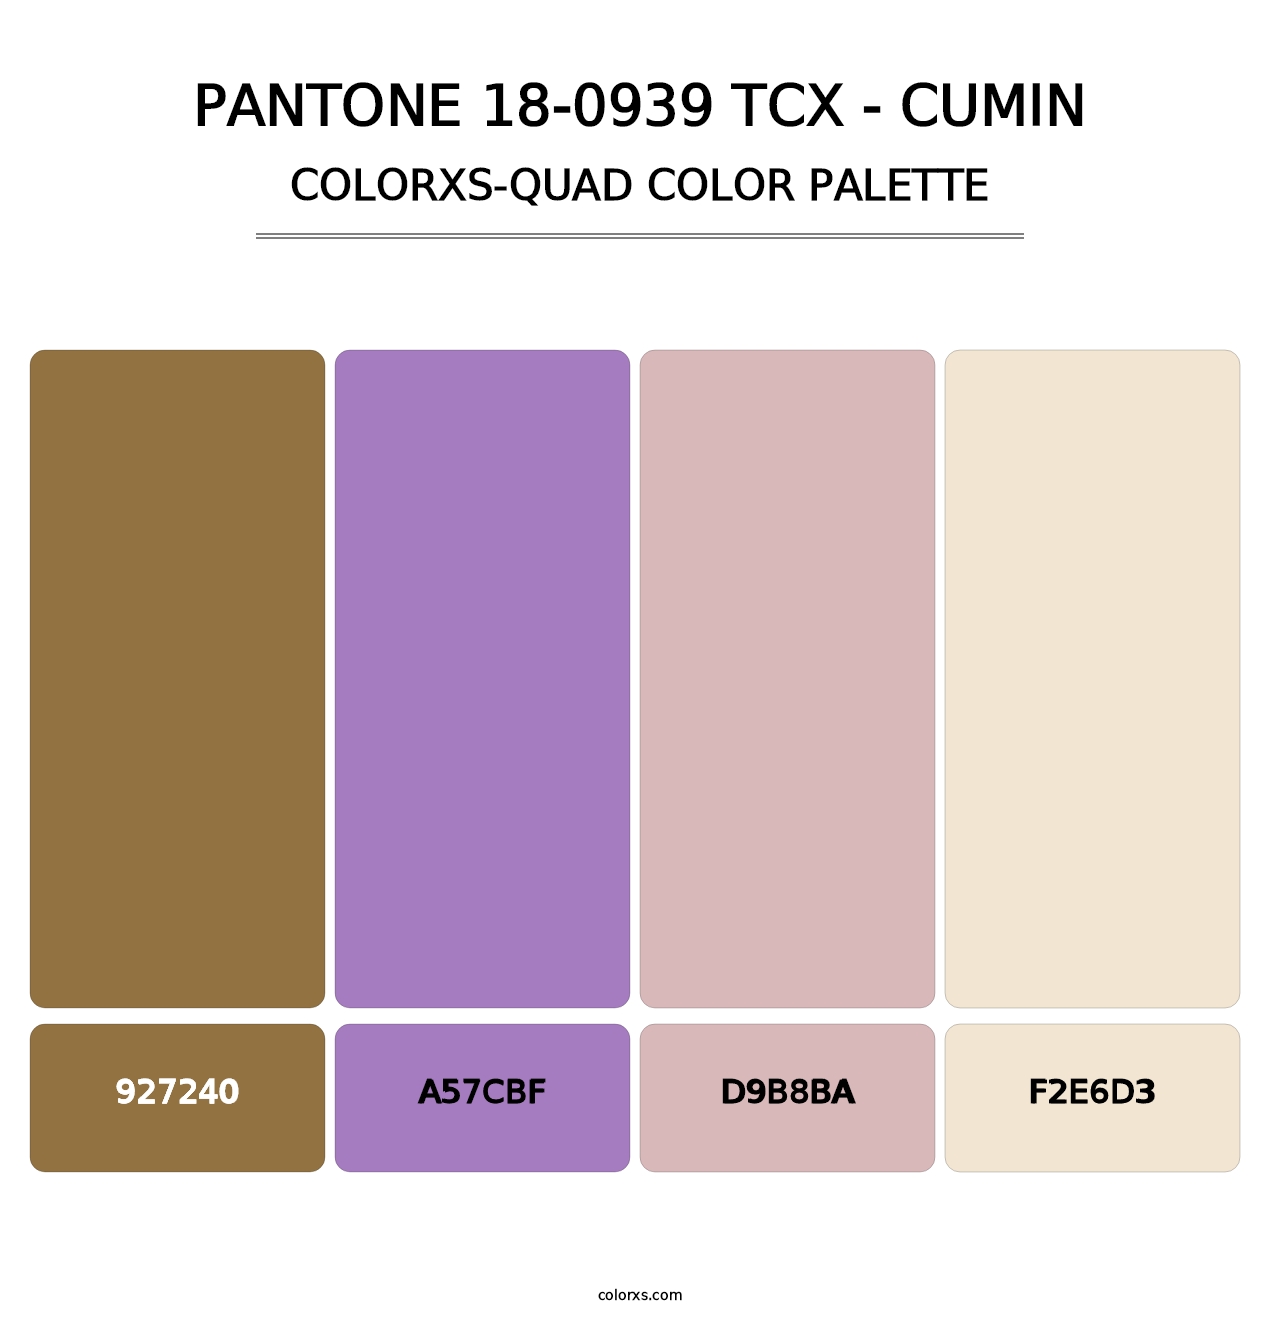 PANTONE 18-0939 TCX - Cumin - Colorxs Quad Palette